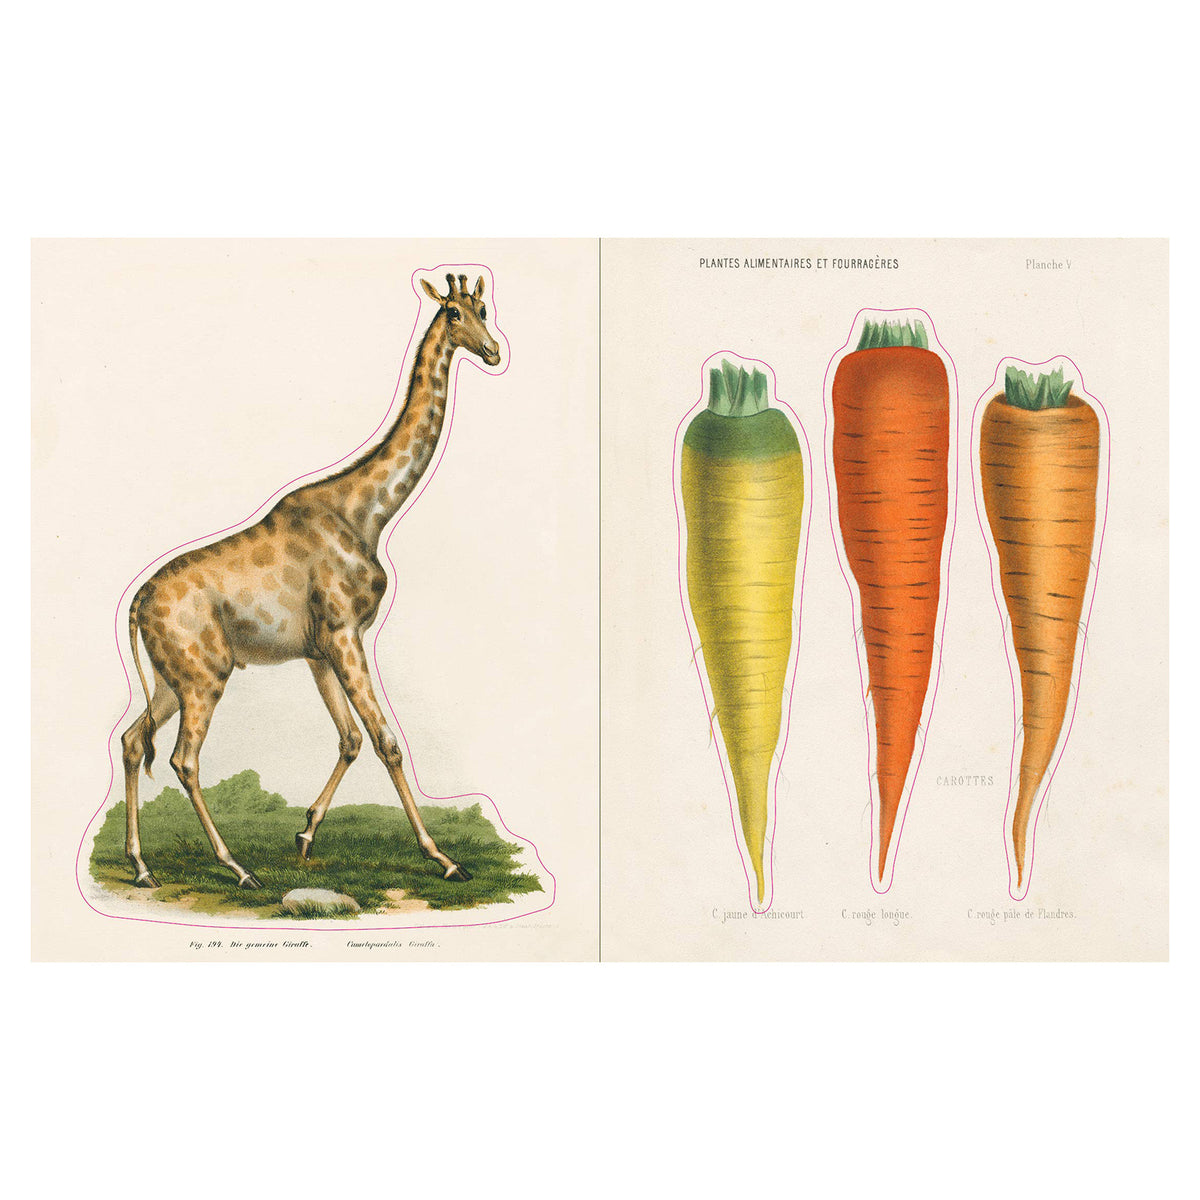 John Derian Sticker Book&#39;s giraffe and carrot sticker pages.